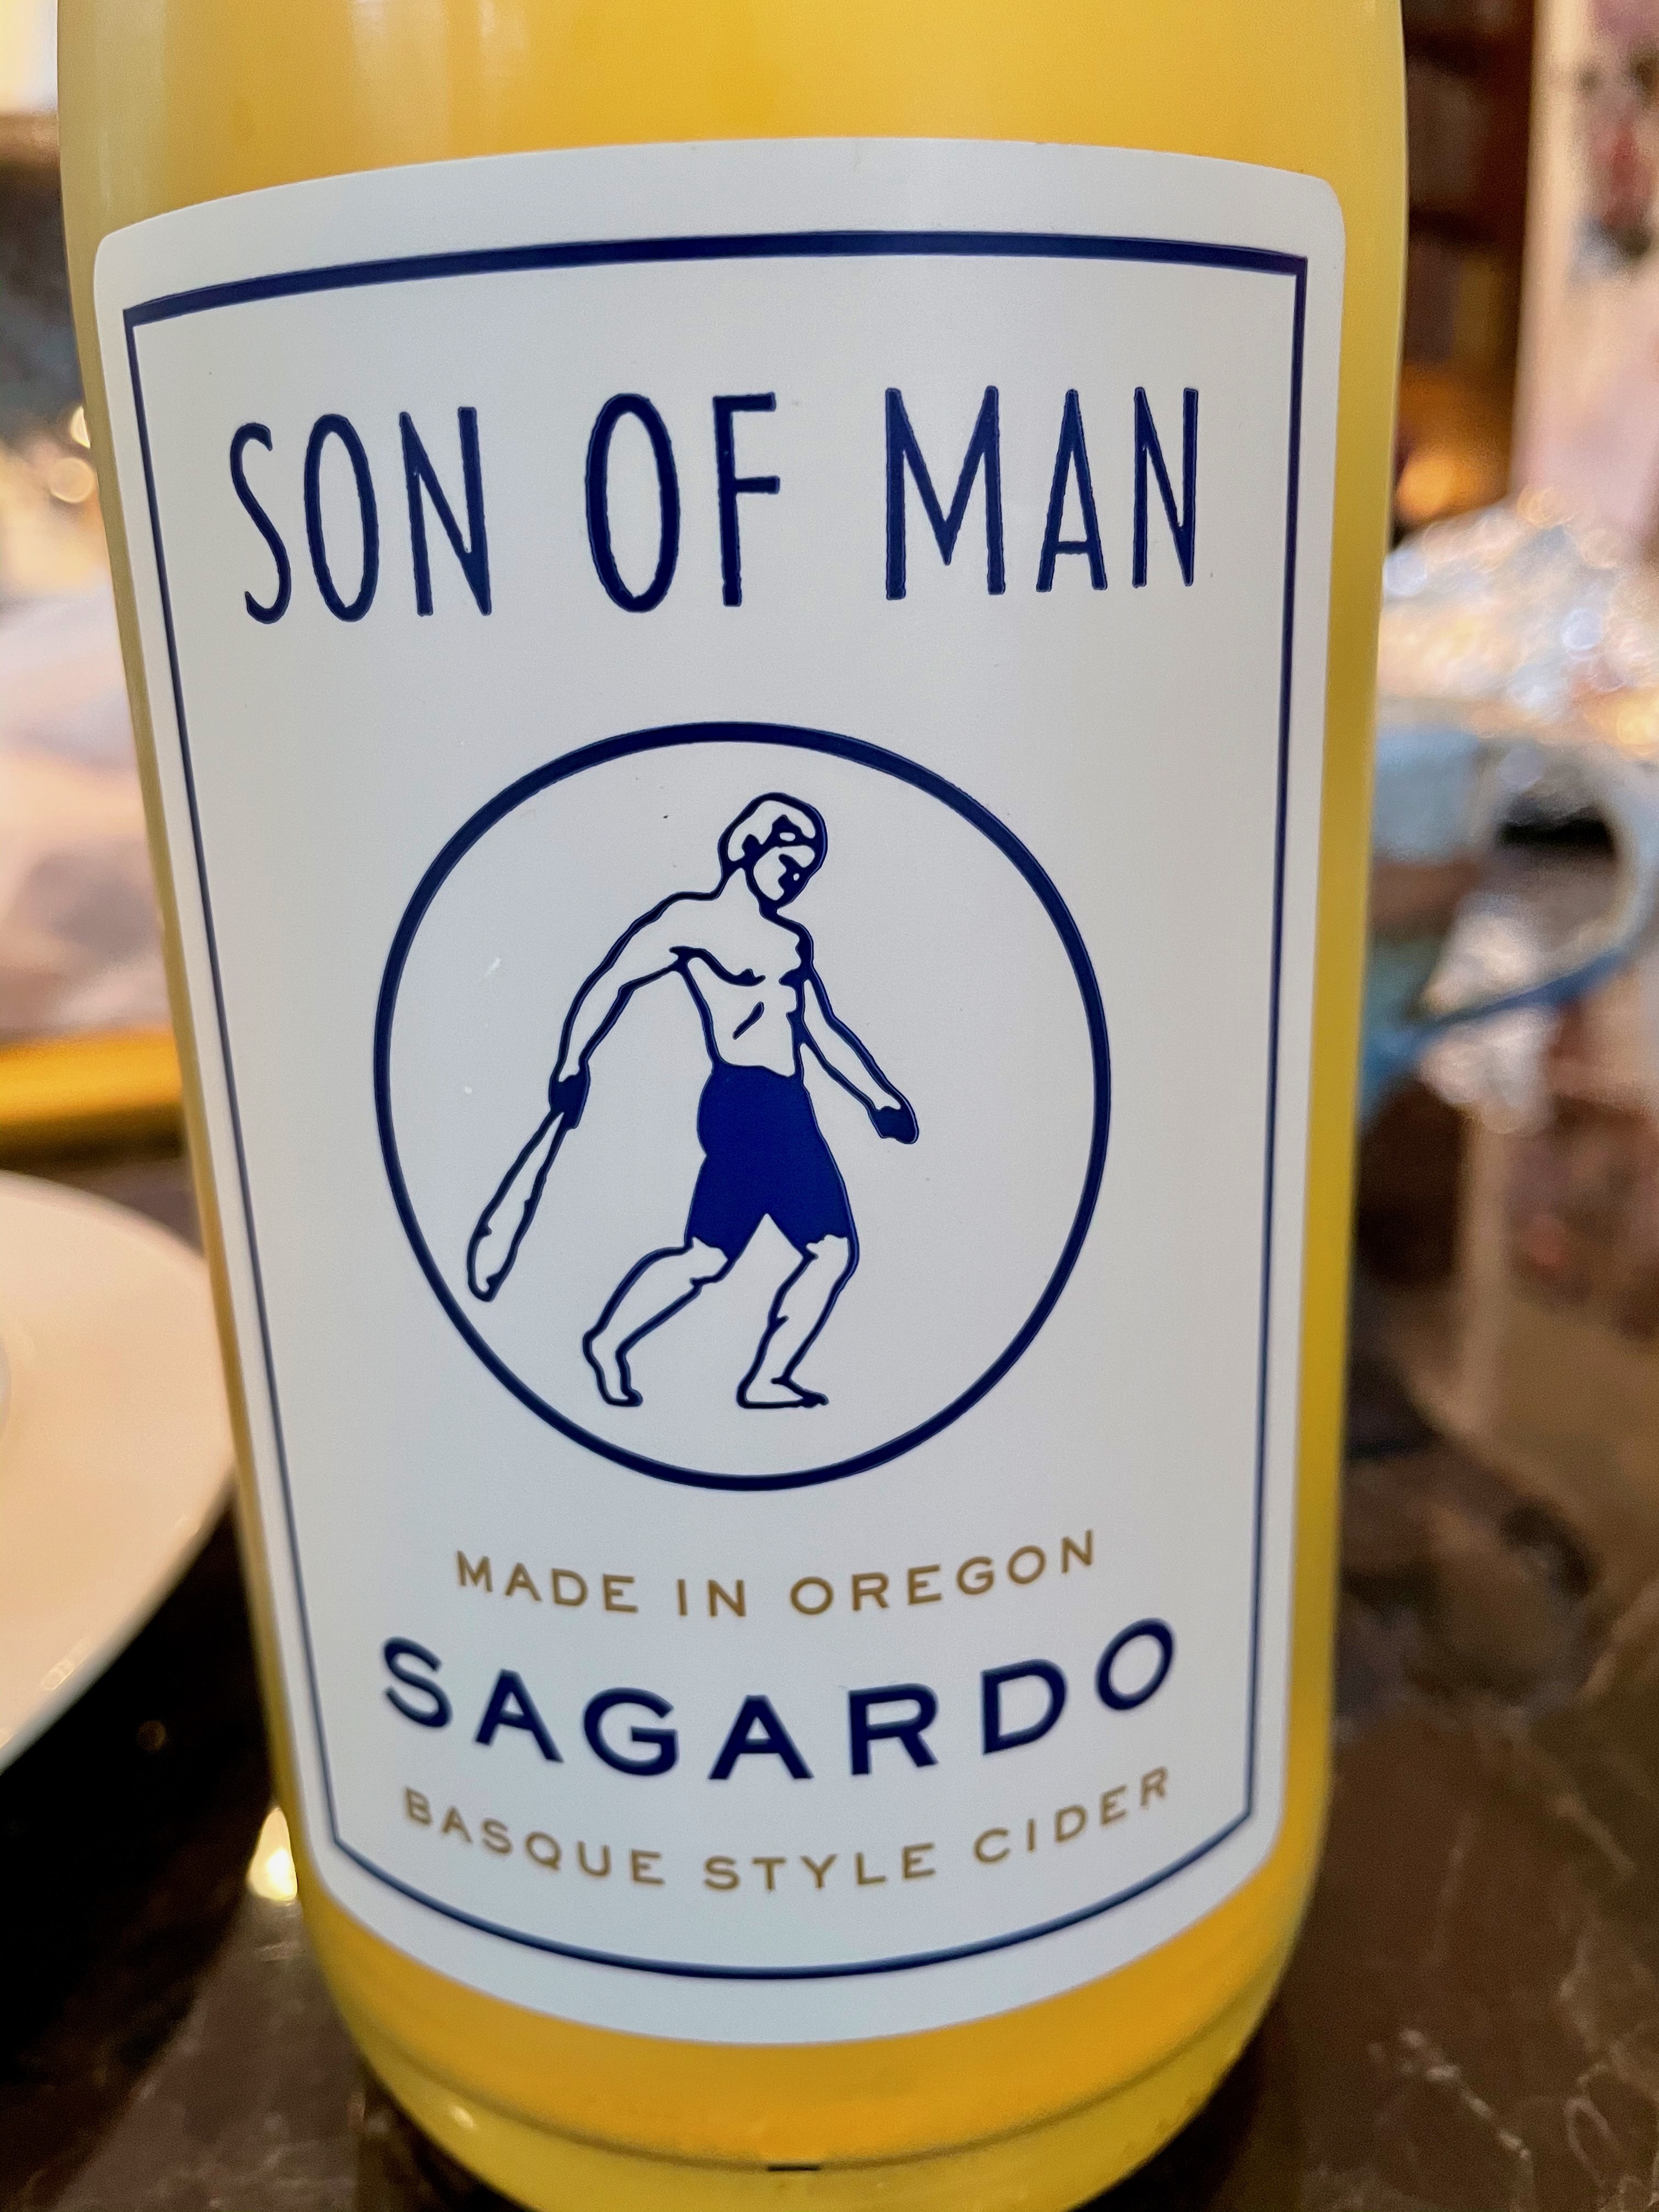 Sagardo Basque Style Cider